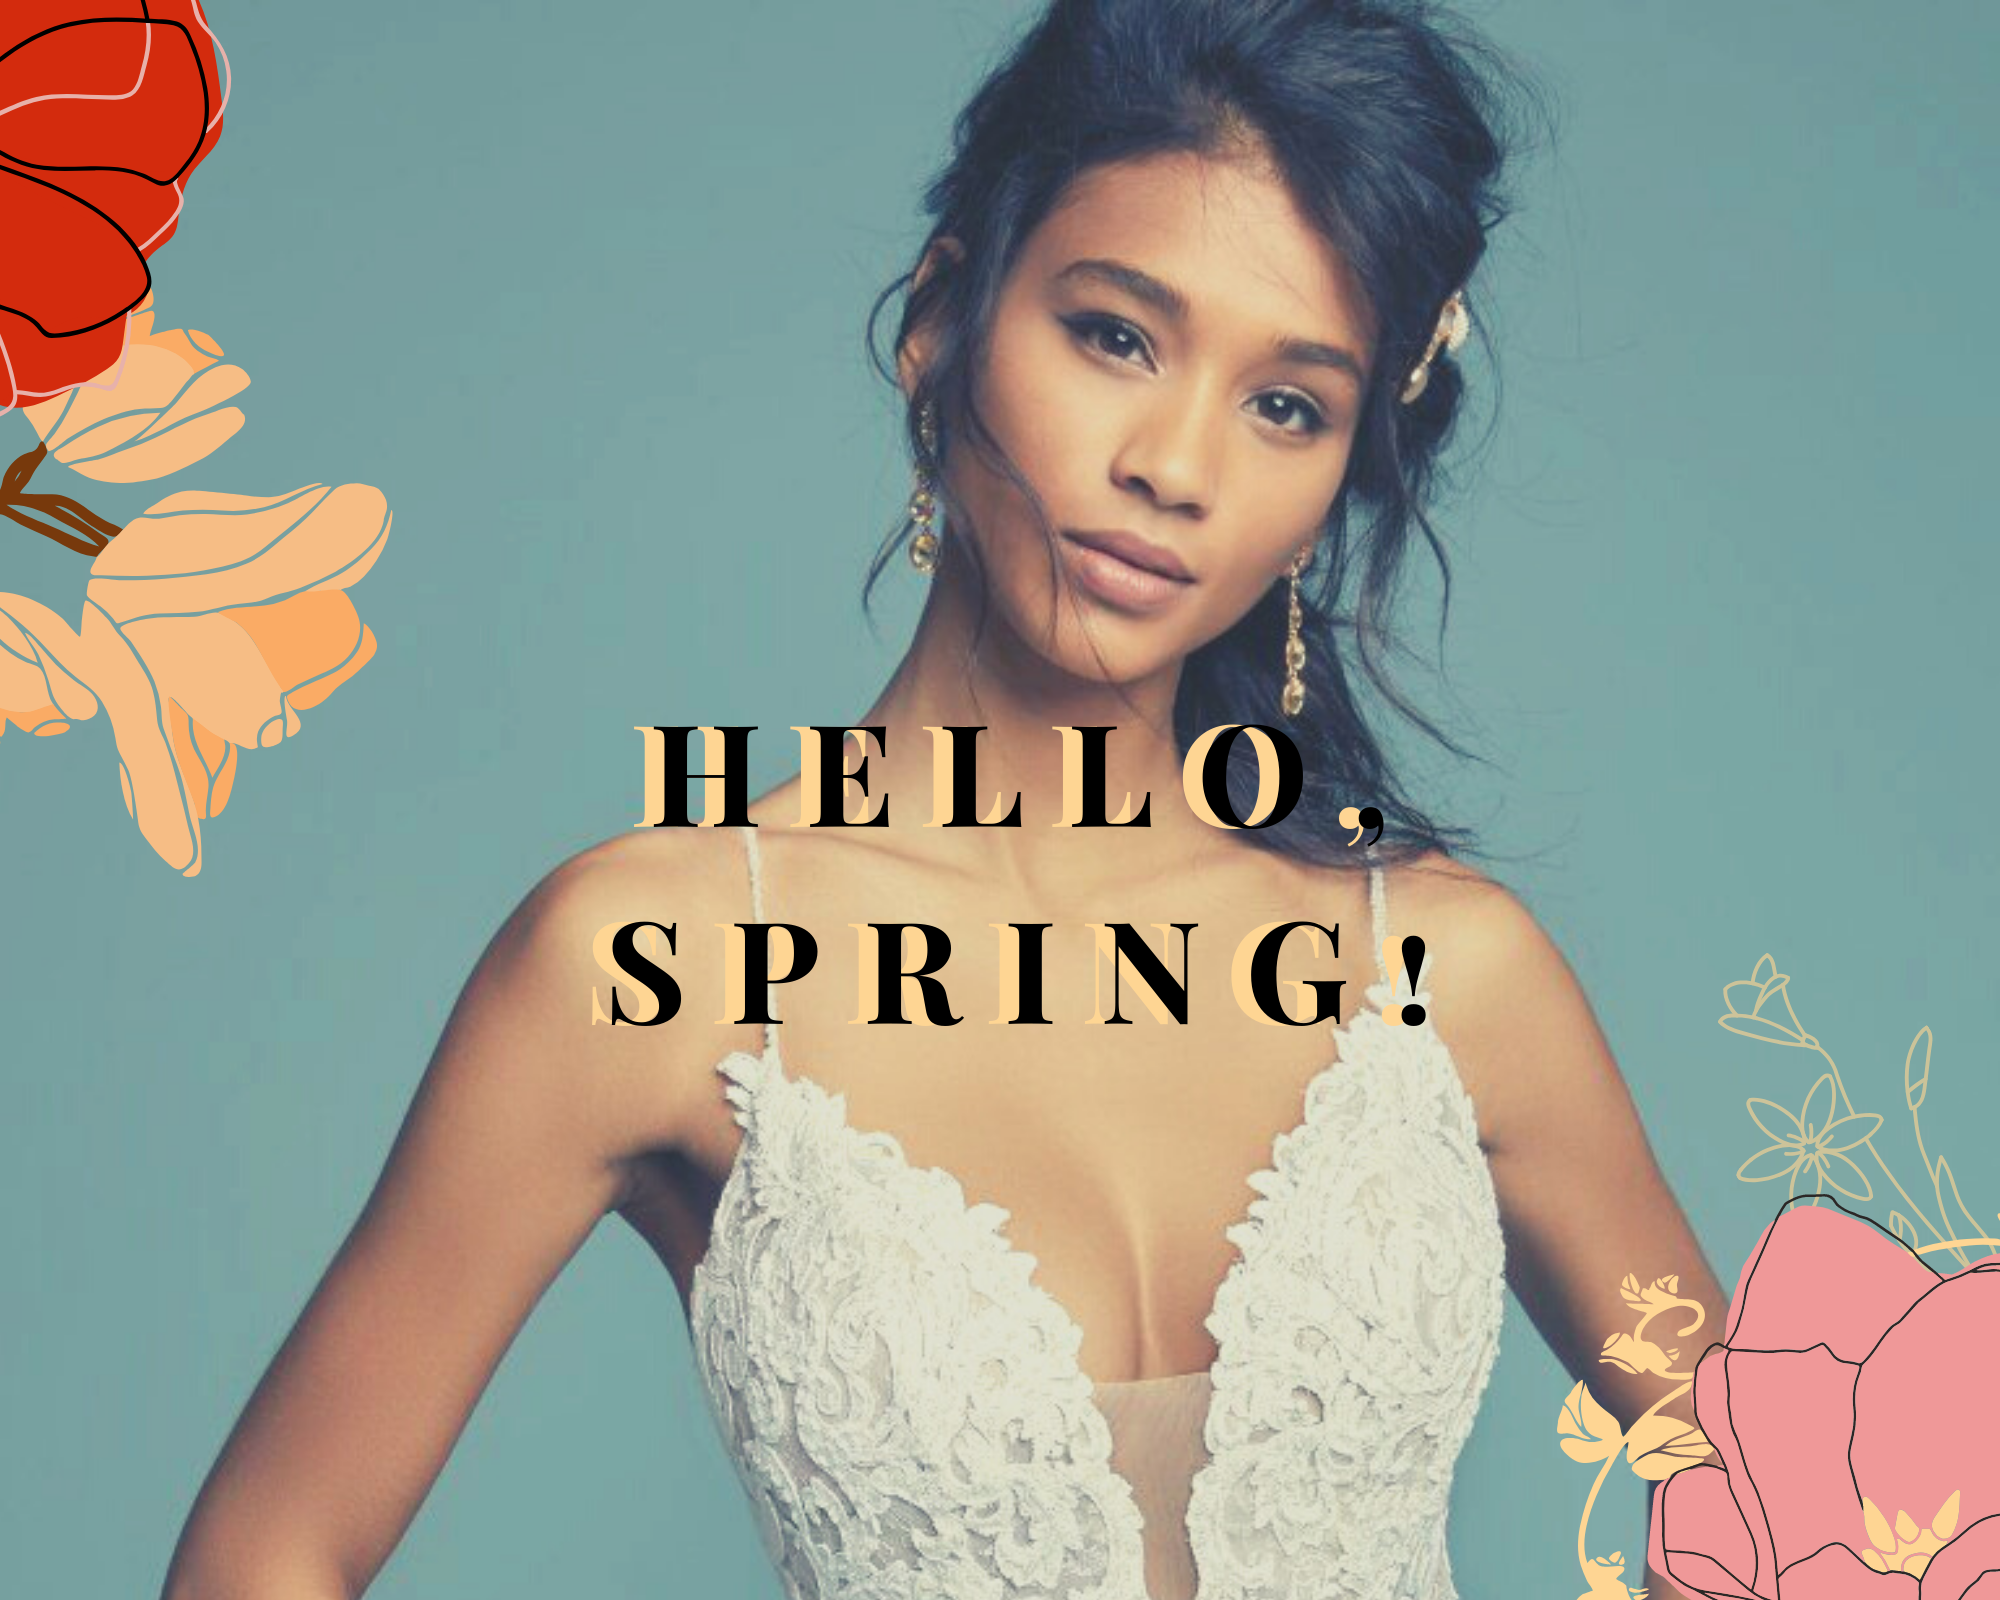 Hello, Spring!. Desktop Image